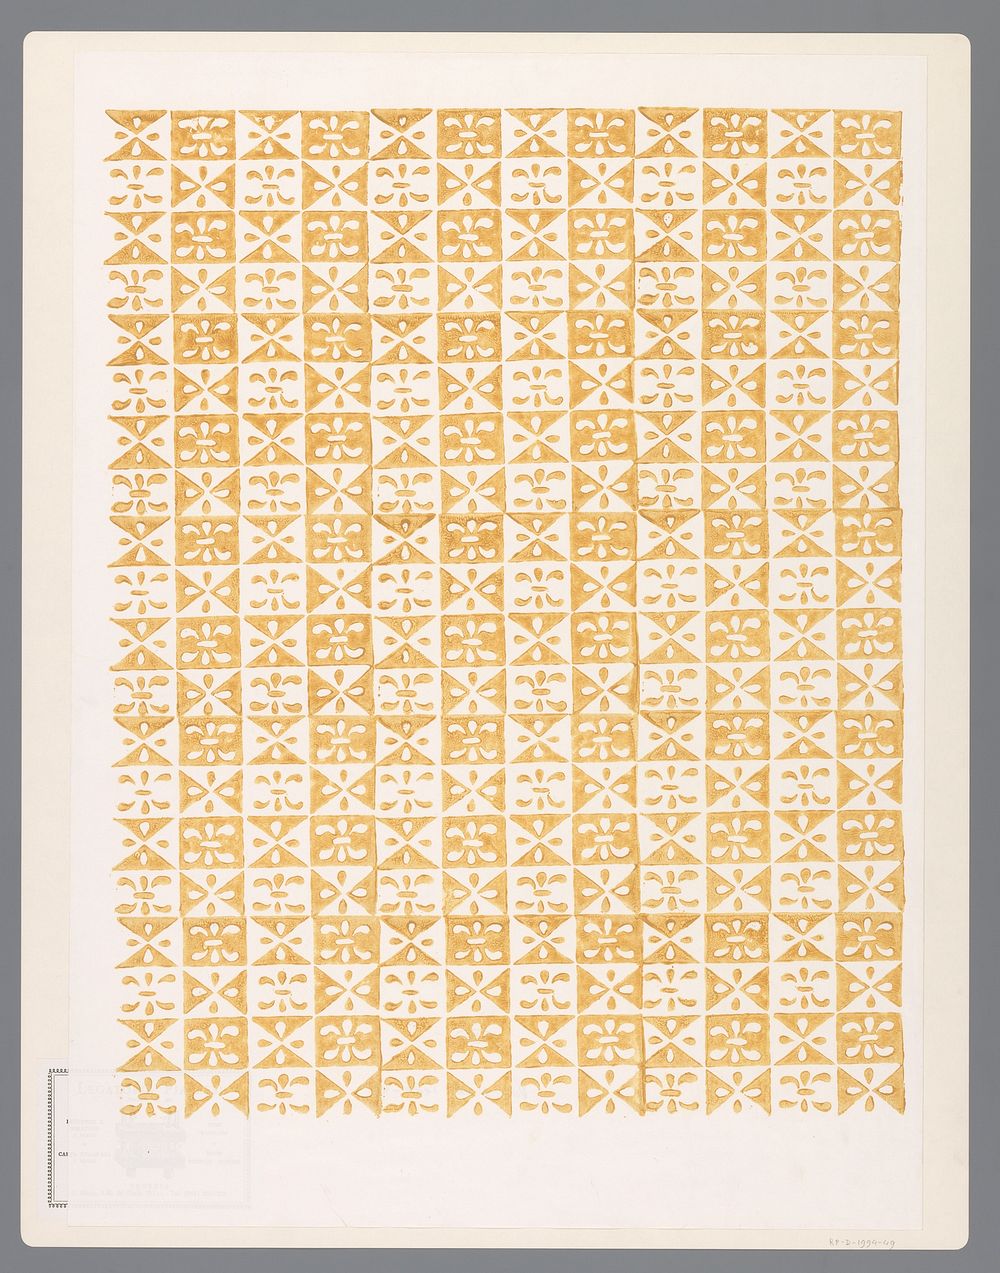 Blad met schaakbordpatroon van blokjes met ornamenten (1990 - 1994) by Legatoria Piazzesi